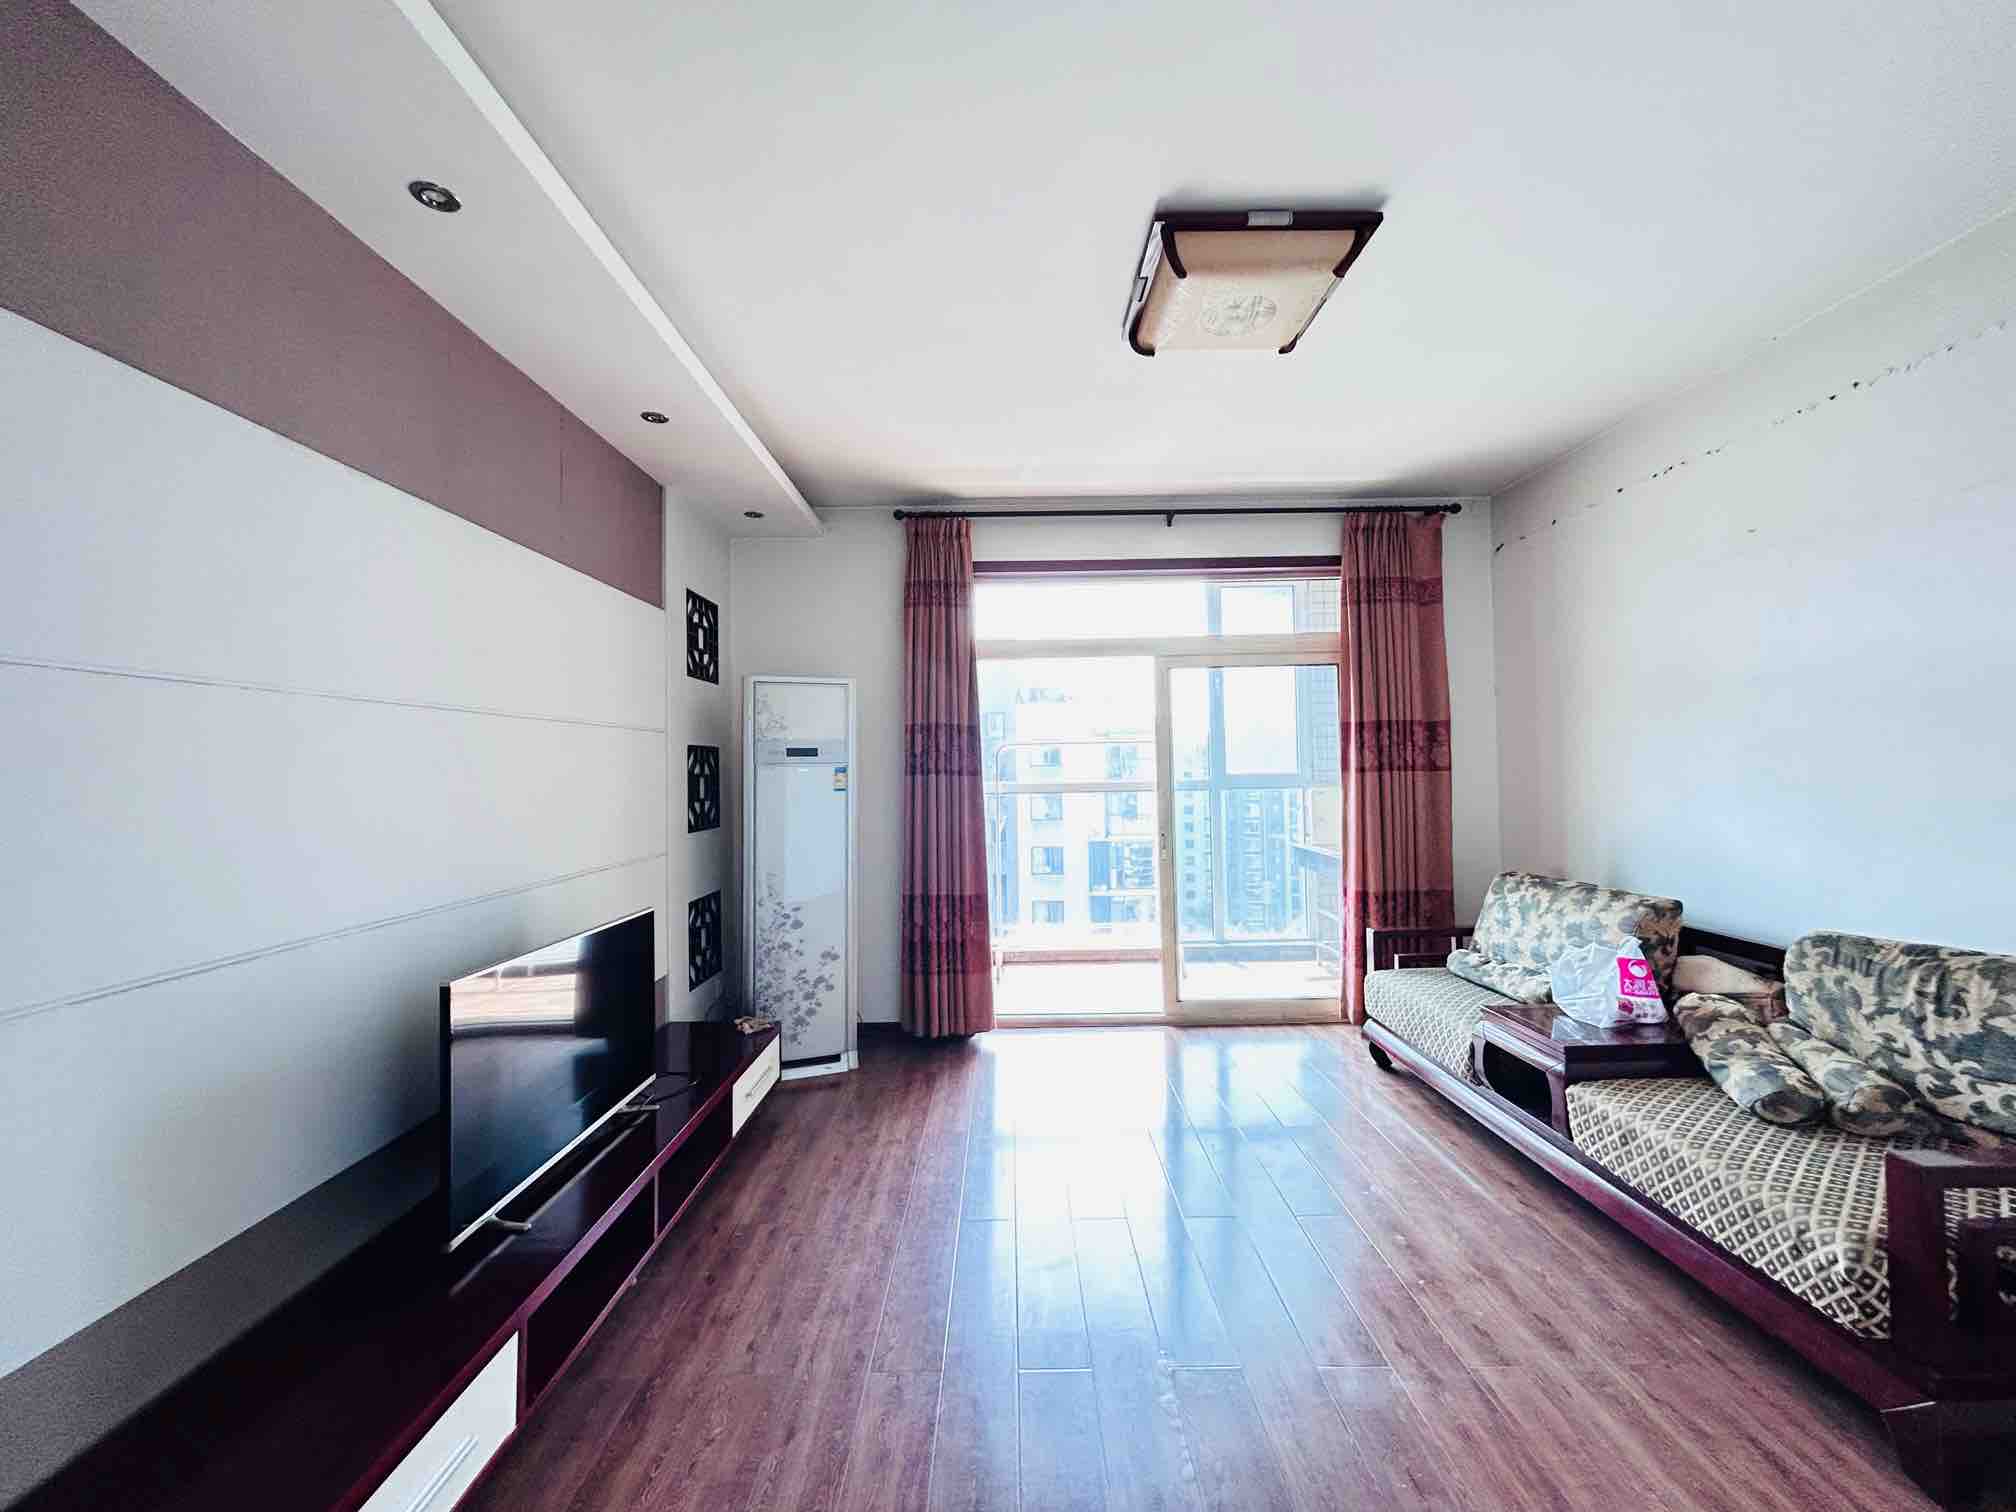 锦绣泉城,3室3厅,299万,满两年,中装,有电梯